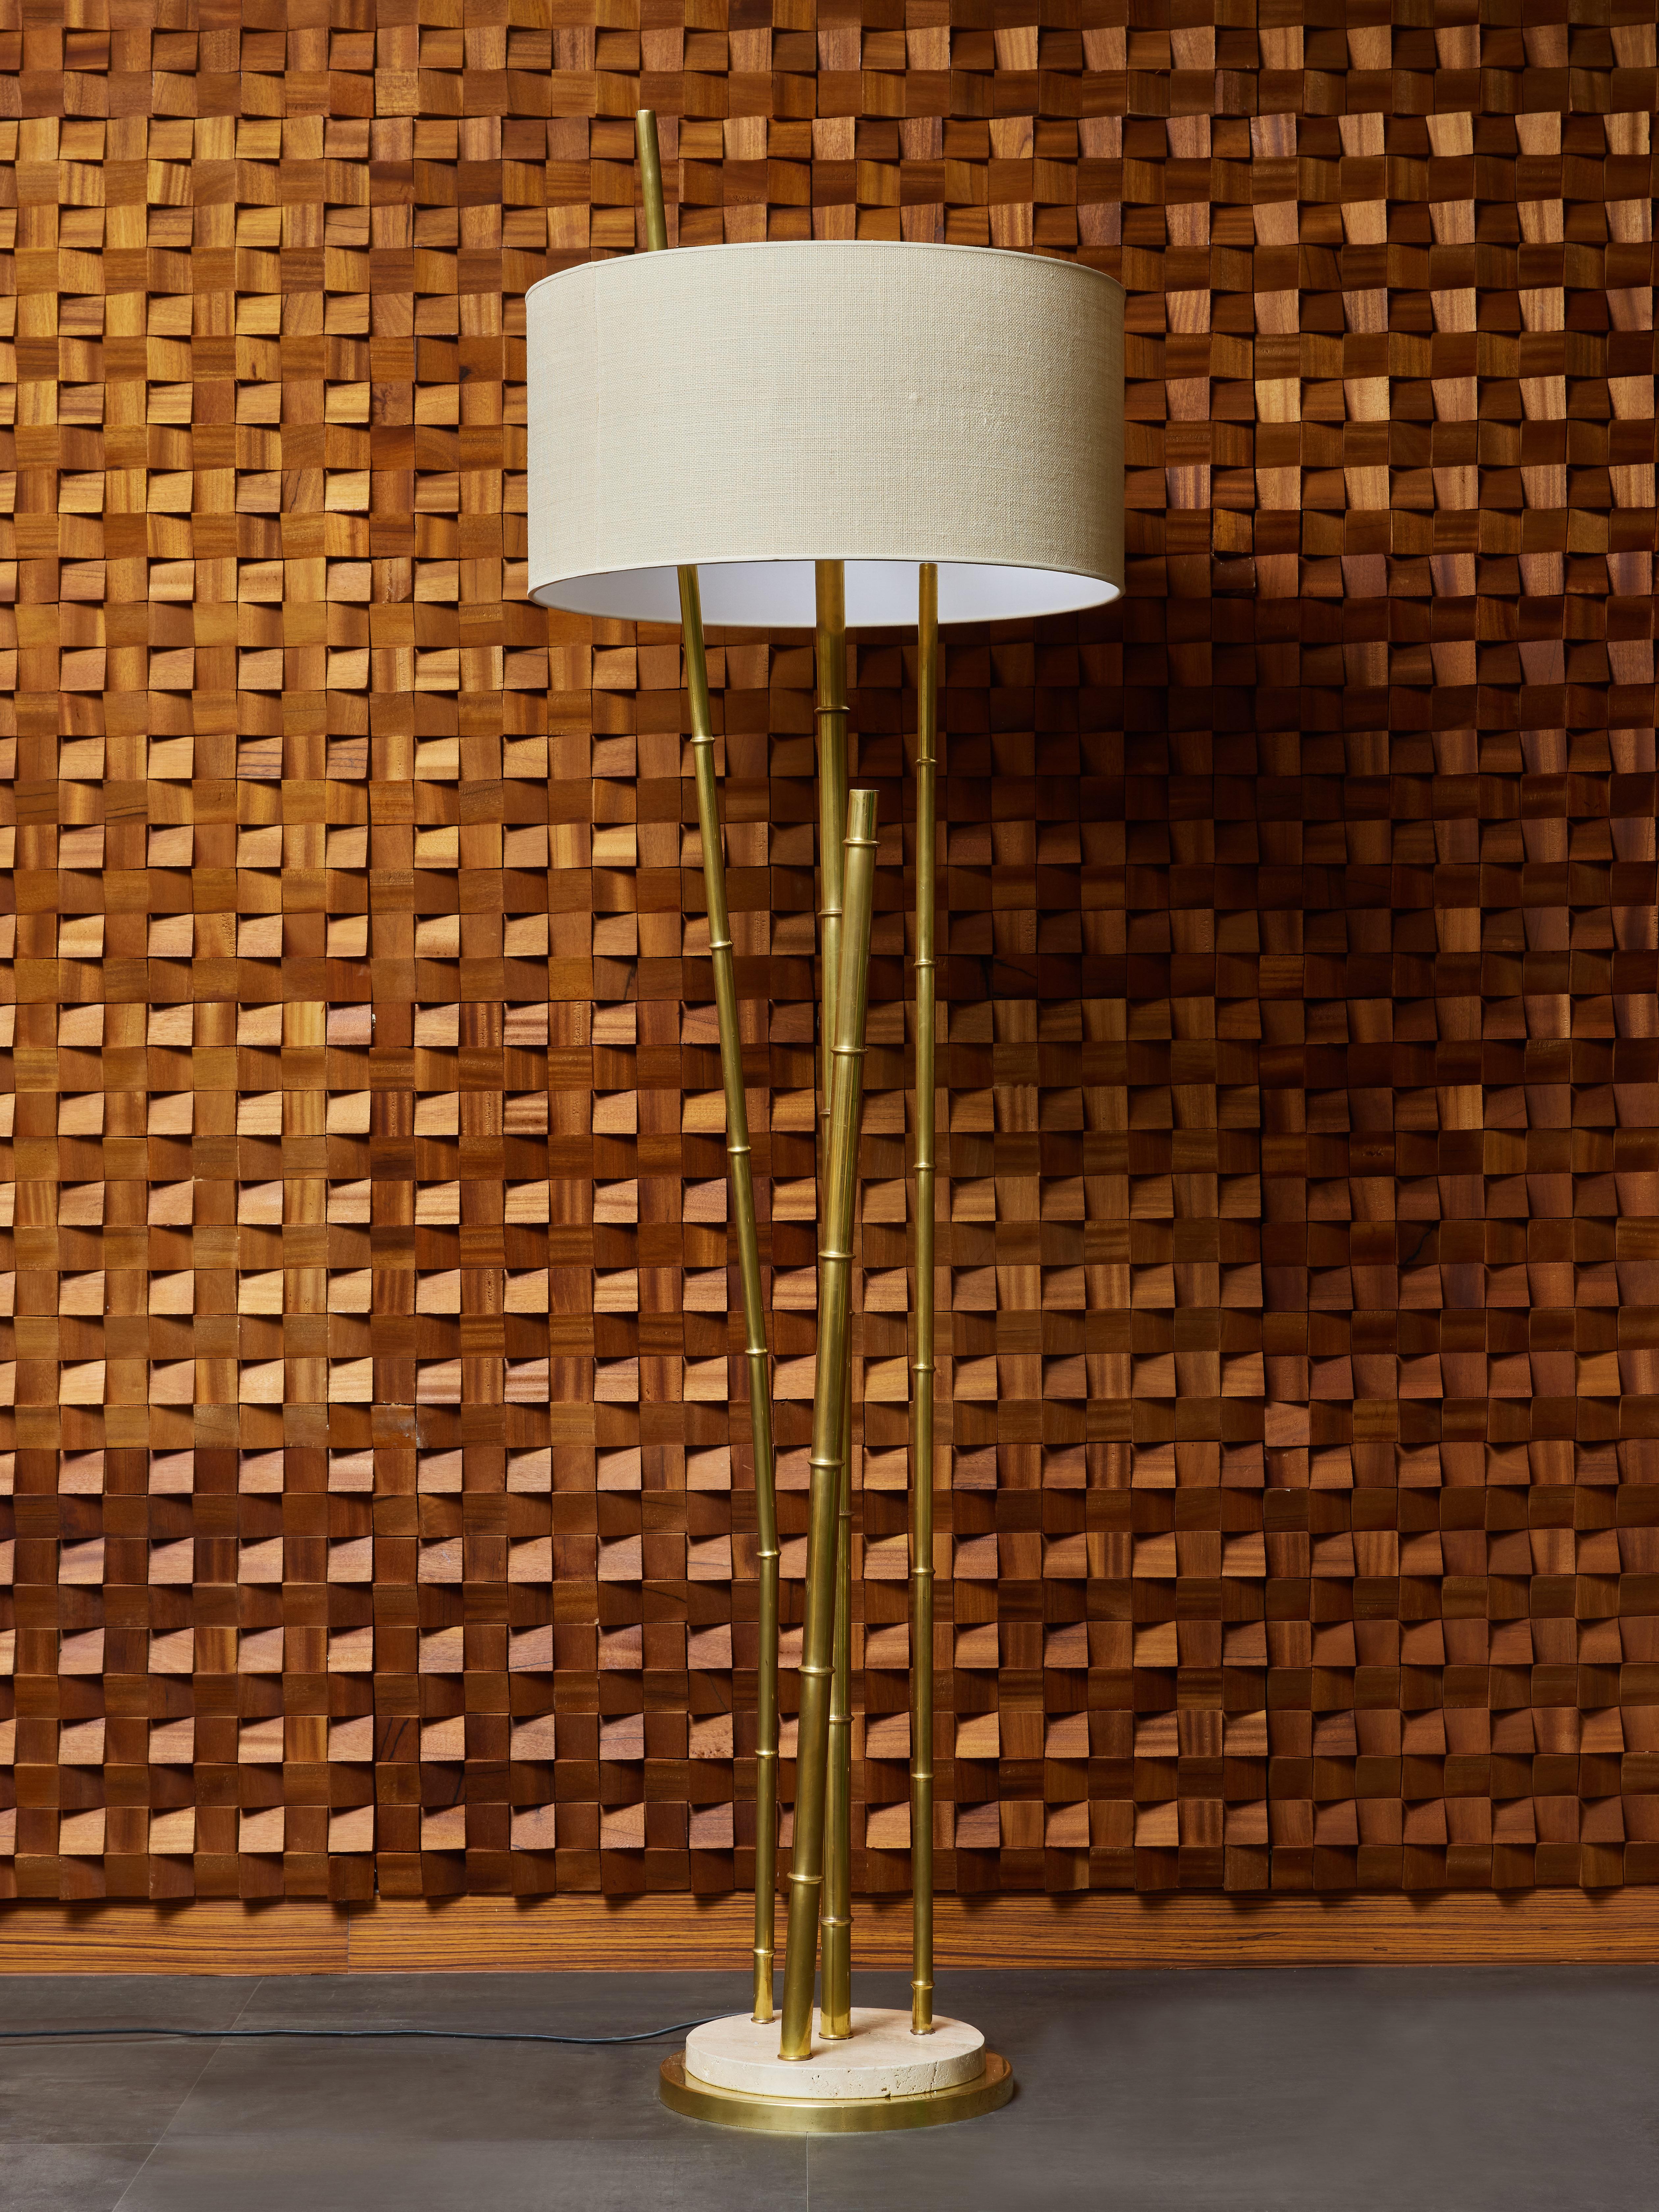 Top-Light composé d'une double base circulaire en laiton et travertin, d'un bras de lumière et de décors en forme de bambou, surmonté d'un abat-jour en tissu.